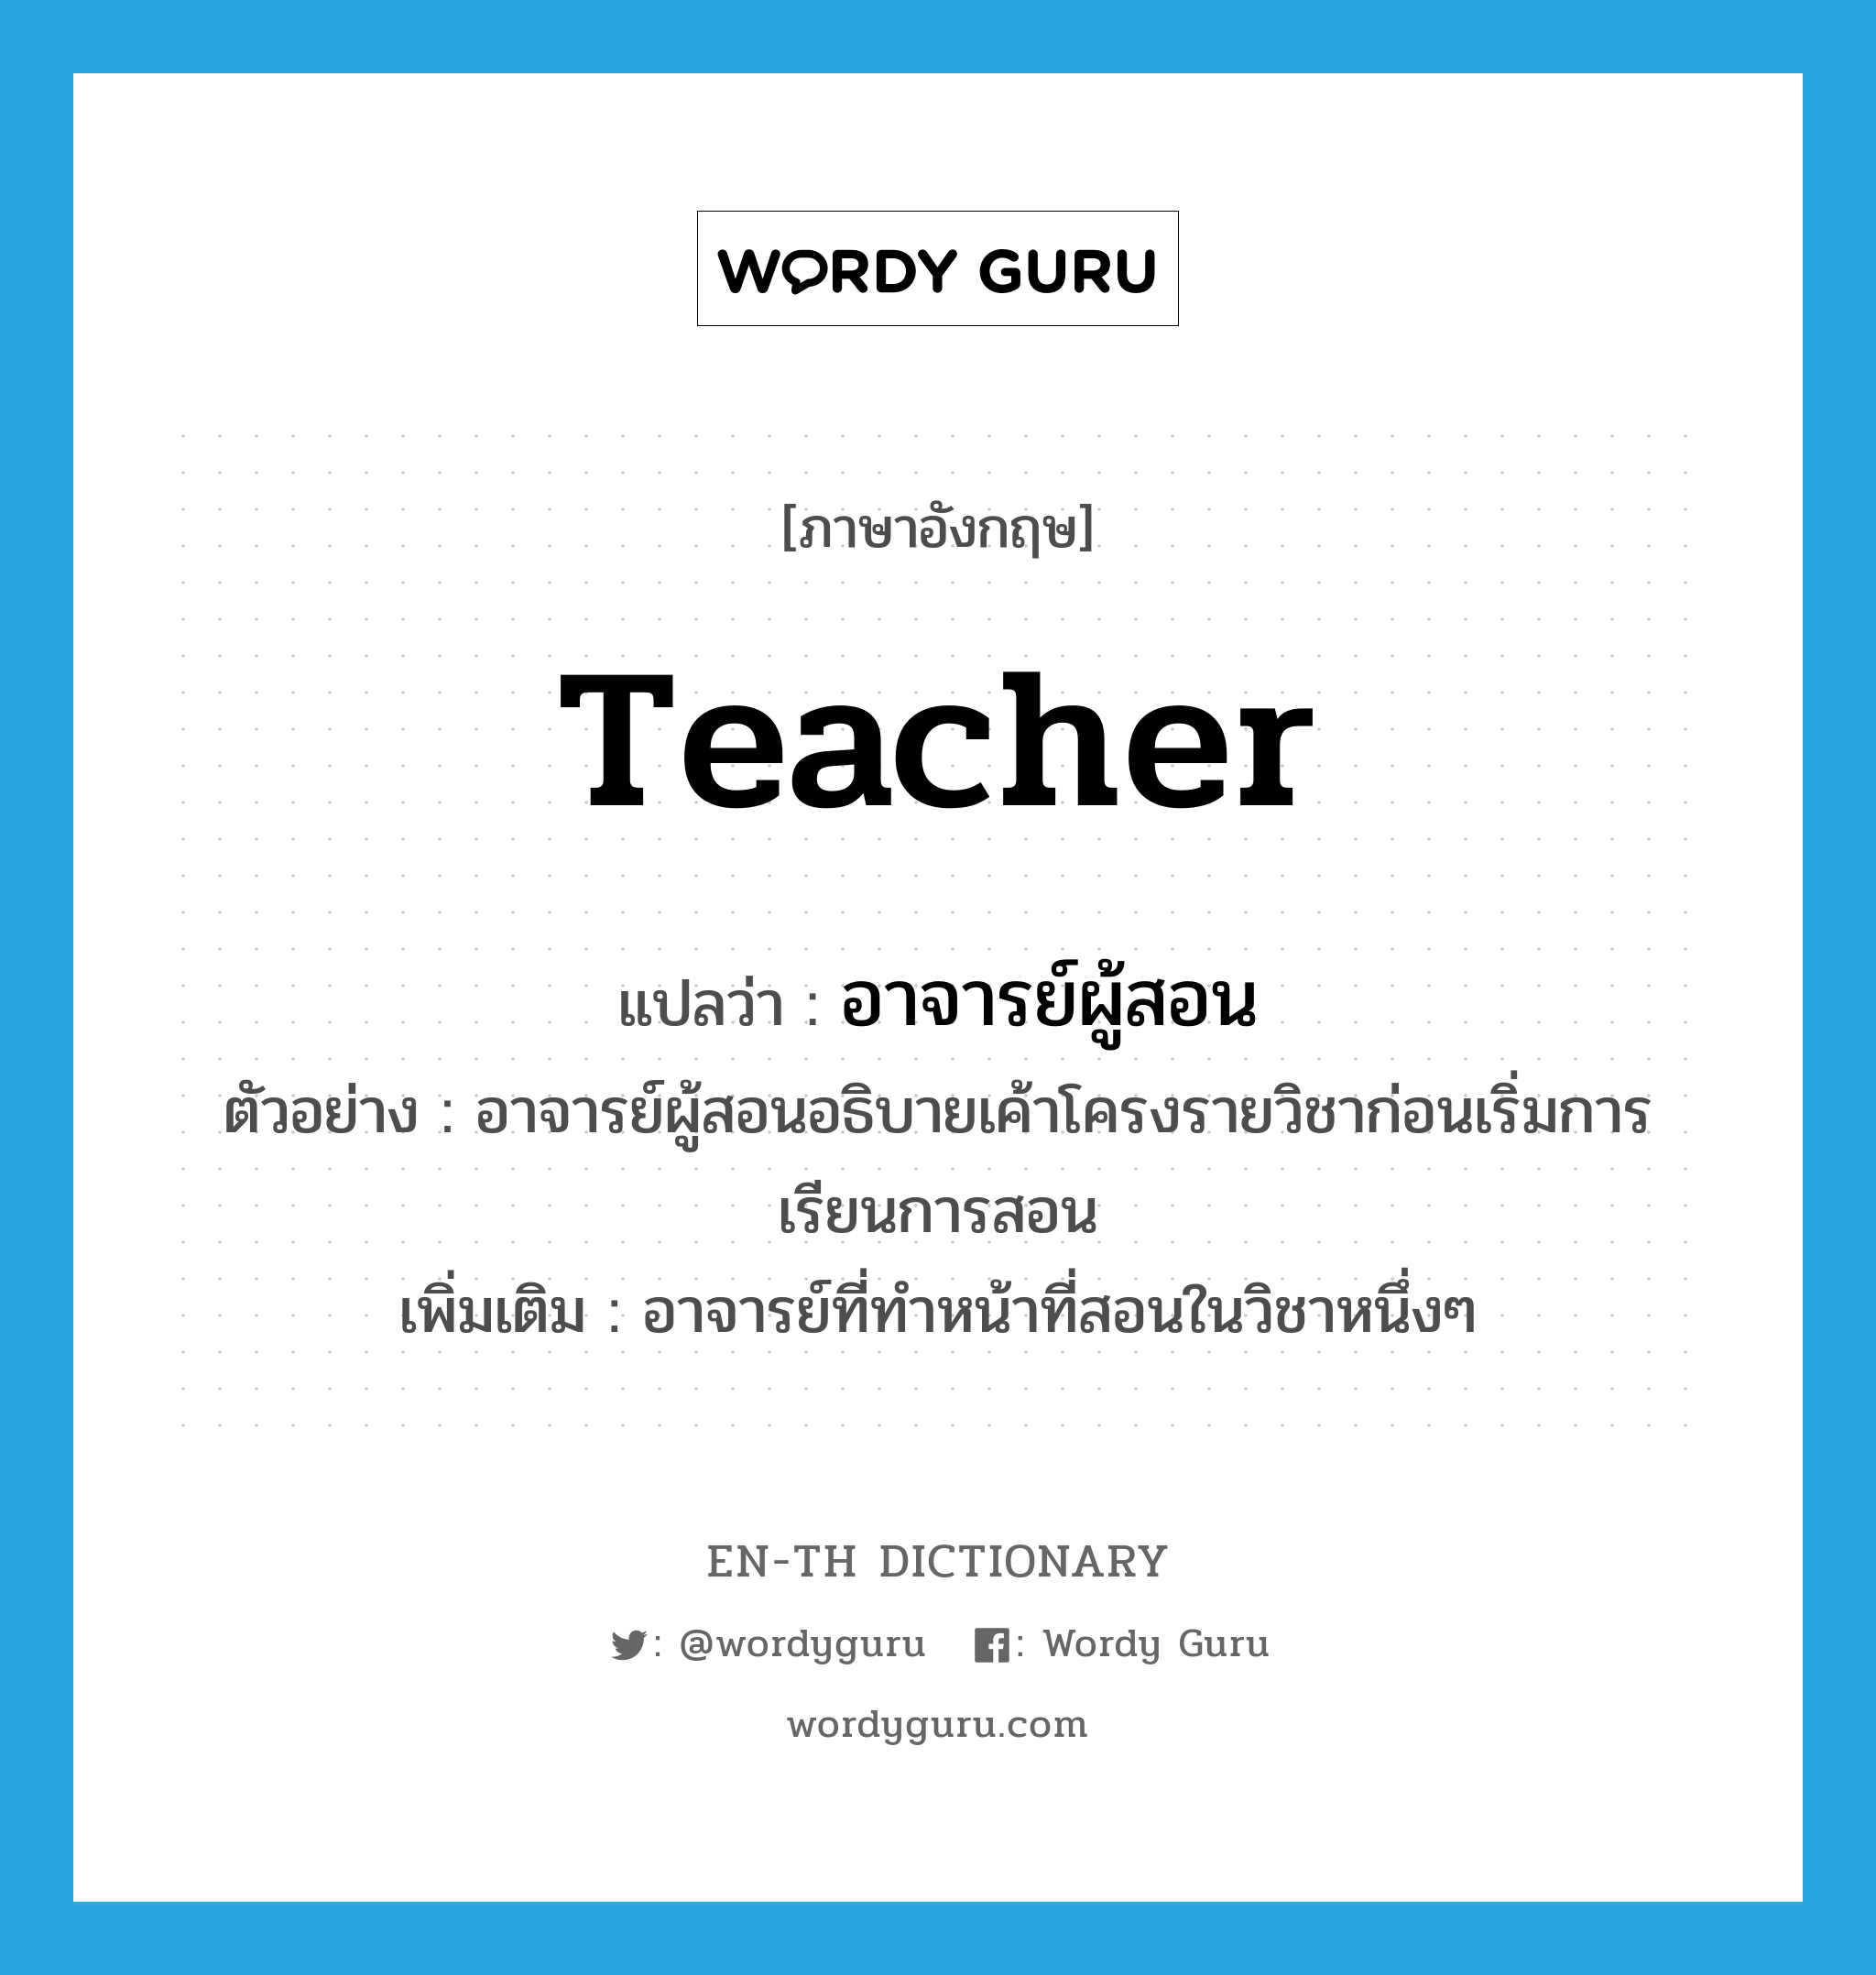 อาจารย์ผู้สอน ภาษาอังกฤษ?, คำศัพท์ภาษาอังกฤษ อาจารย์ผู้สอน แปลว่า teacher ประเภท N ตัวอย่าง อาจารย์ผู้สอนอธิบายเค้าโครงรายวิชาก่อนเริ่มการเรียนการสอน เพิ่มเติม อาจารย์ที่ทำหน้าที่สอนในวิชาหนึ่งๆ หมวด N